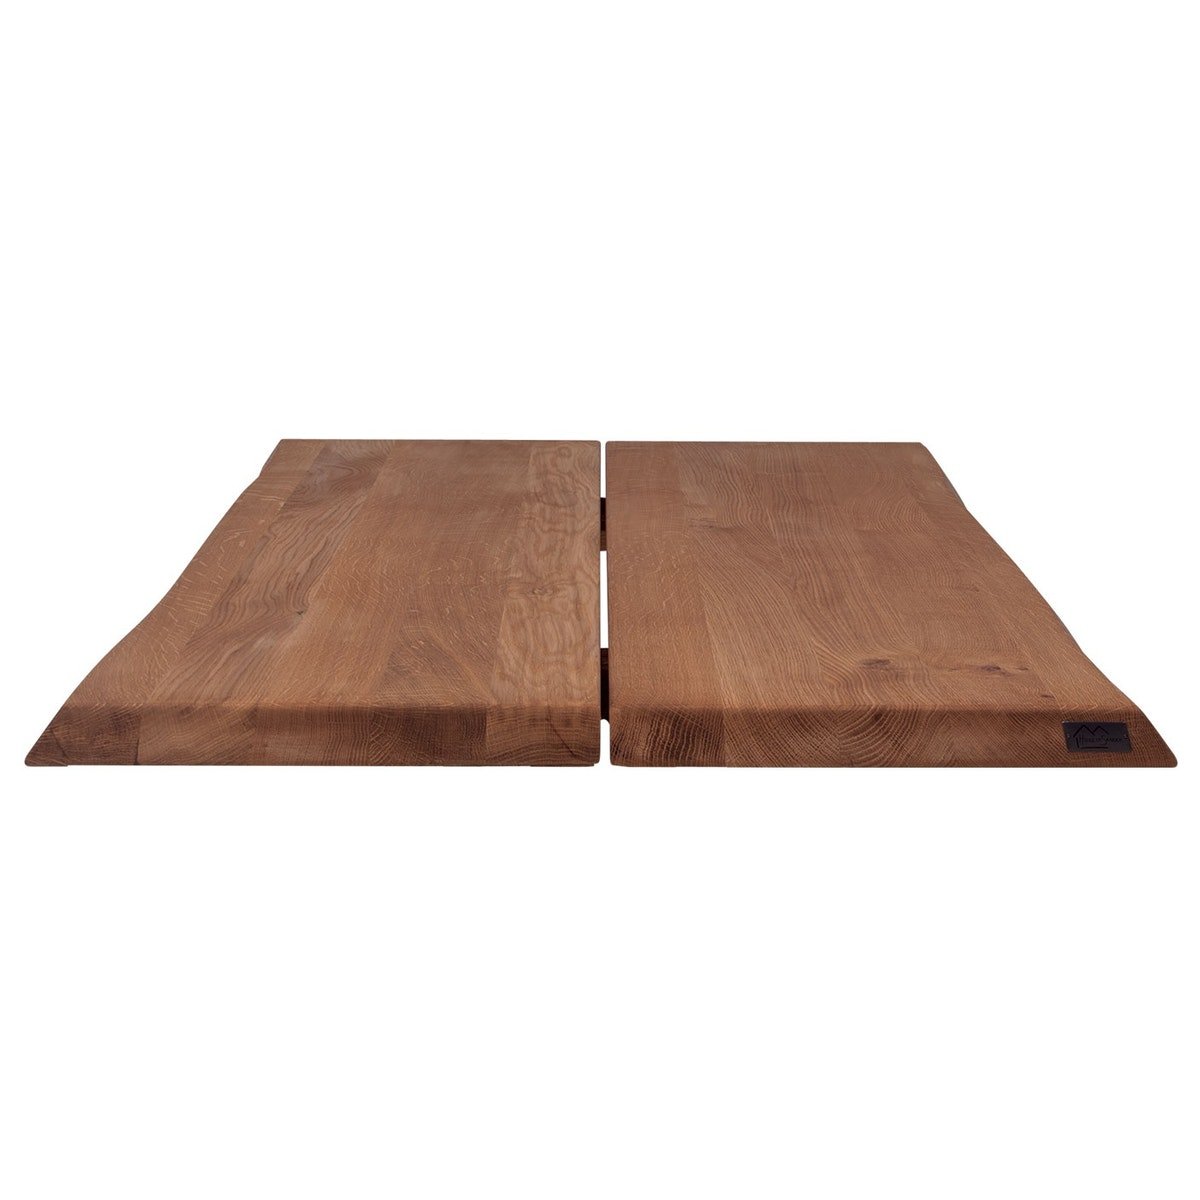 Hugin, Tillægsplade til Hugin plankebord, Egetræ by House of Sander (H: 4 cm. B: 95 cm. L: 50 cm., Mocca)